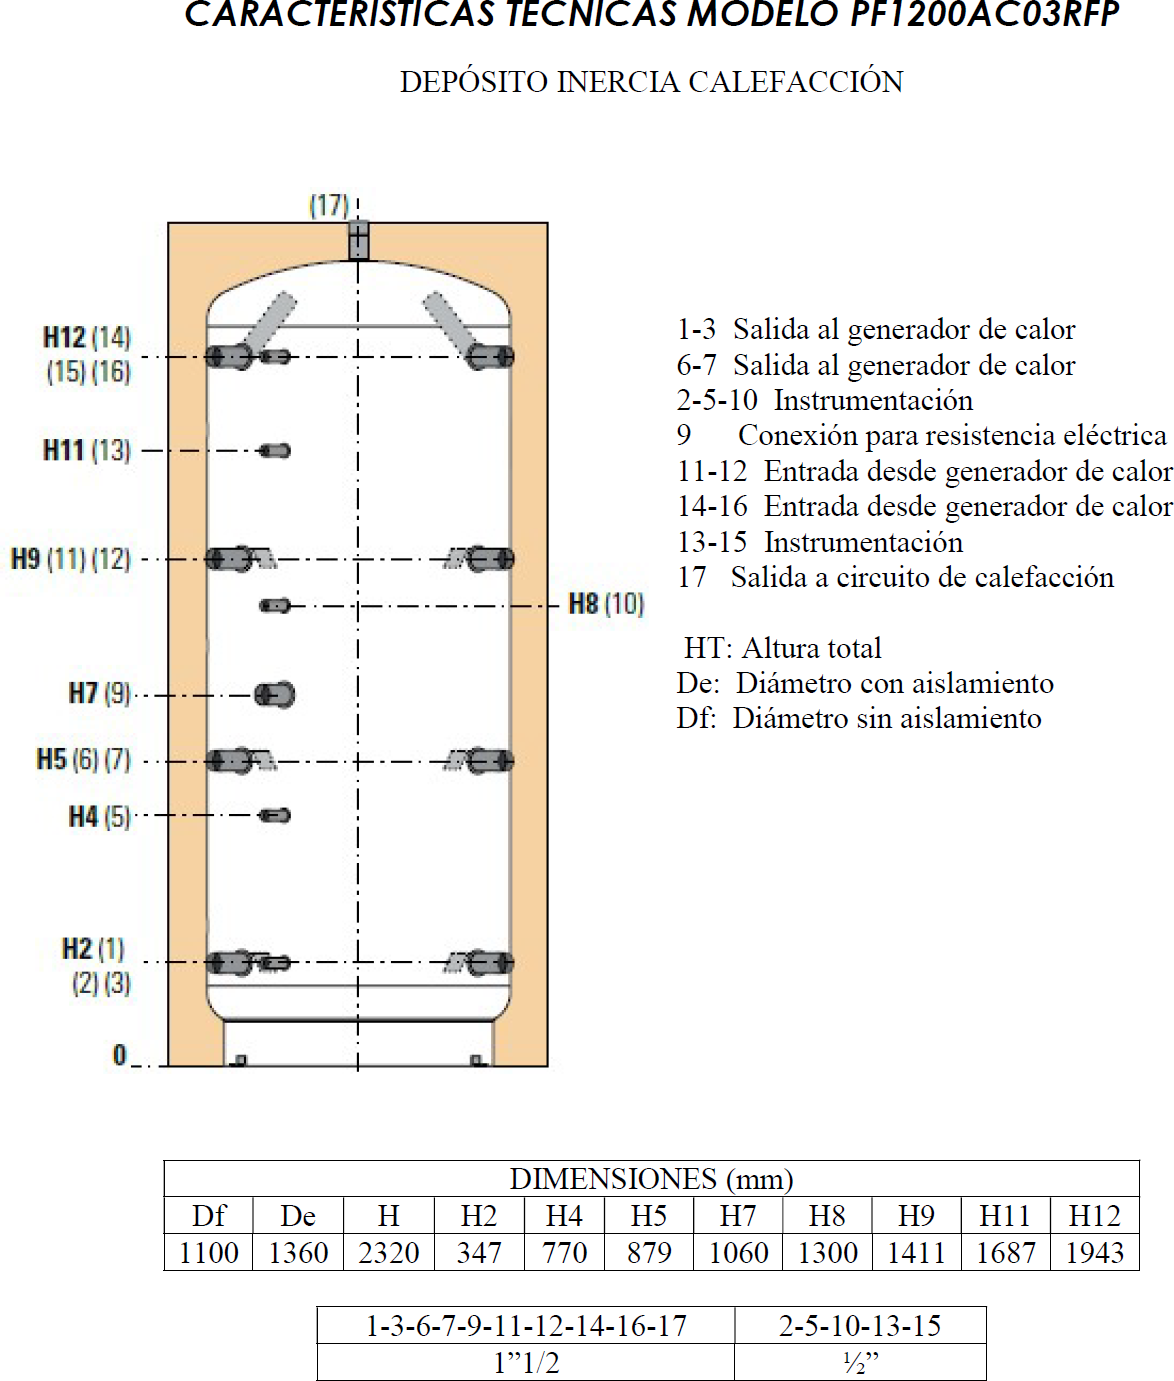 CARACTERISTICAS TECNICAS MODELO PF1150AC03RG DEPÓSITO INERCIA CALEFACCIÓN 1-3 Salida al generador de calor 6-7 Salida al generador de calor 2-5-10 Instrumentación 9 Conexión para resistencia eléctrica 11-12 Entrada desde generador de calor 14-16 Entrada desde generador de calor 13-15 Instrumentación 17 Salida a circuito de calefacción HT: Altura total De: Diámetro con aislamiento Df: Diámetro sin aislamiento